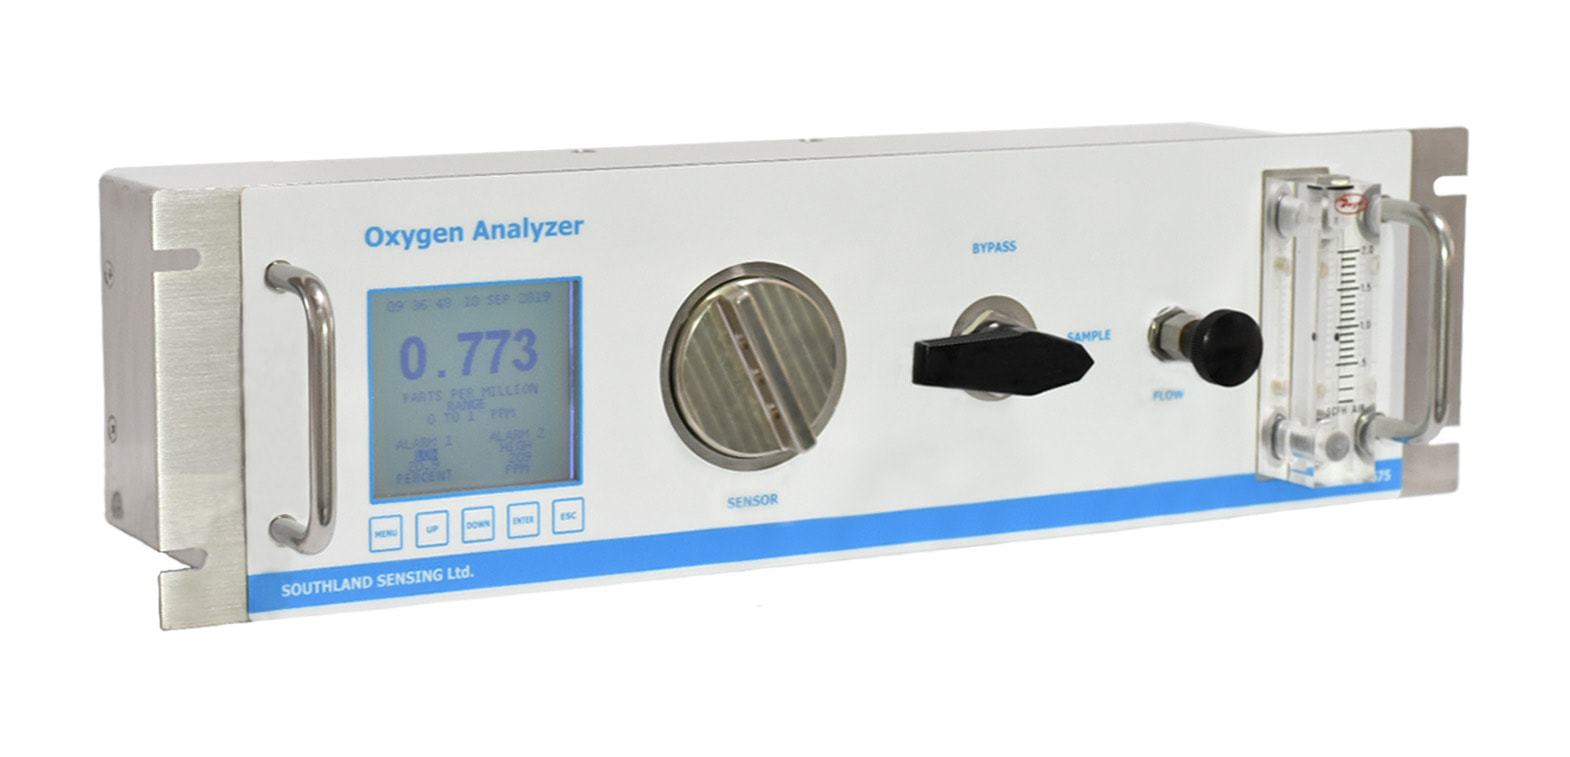 高纯氧气分析仪OMD-775